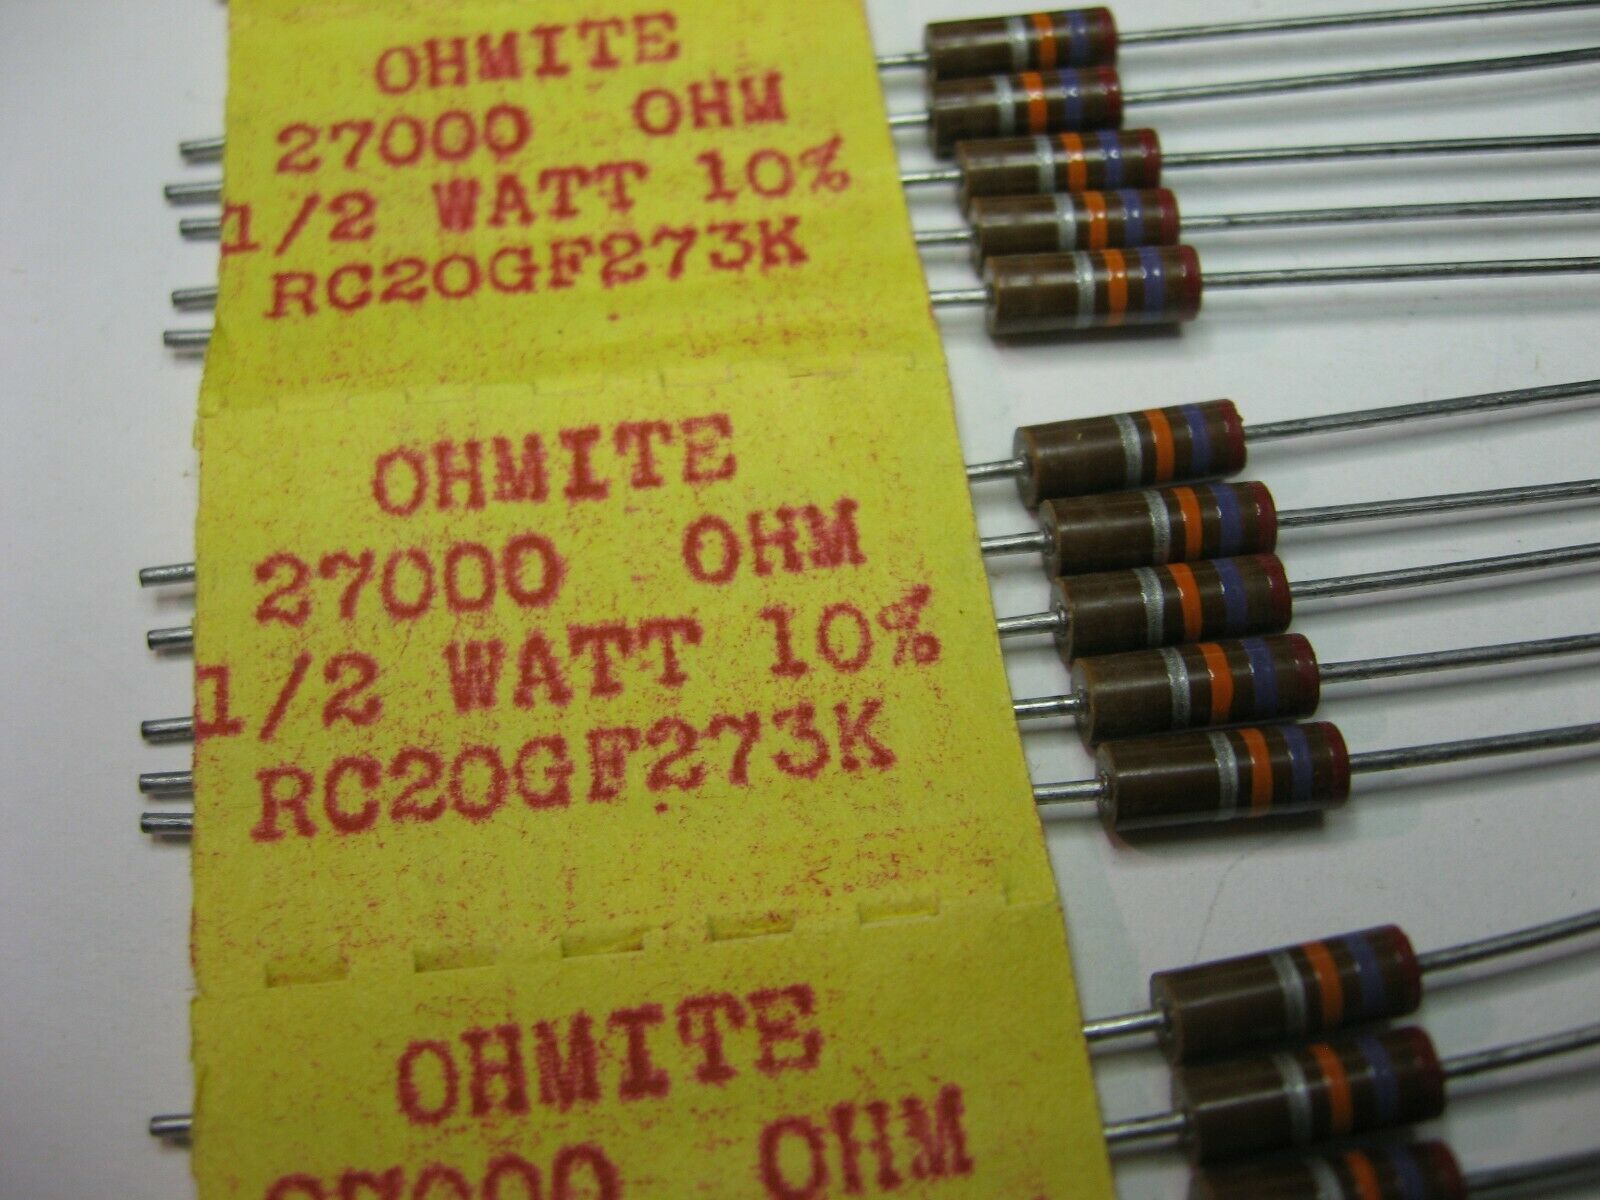 5 Pack Ohmite Carbon Comp 6.8 MEG OHM 1 Watt 5% Resistors NOS 1 